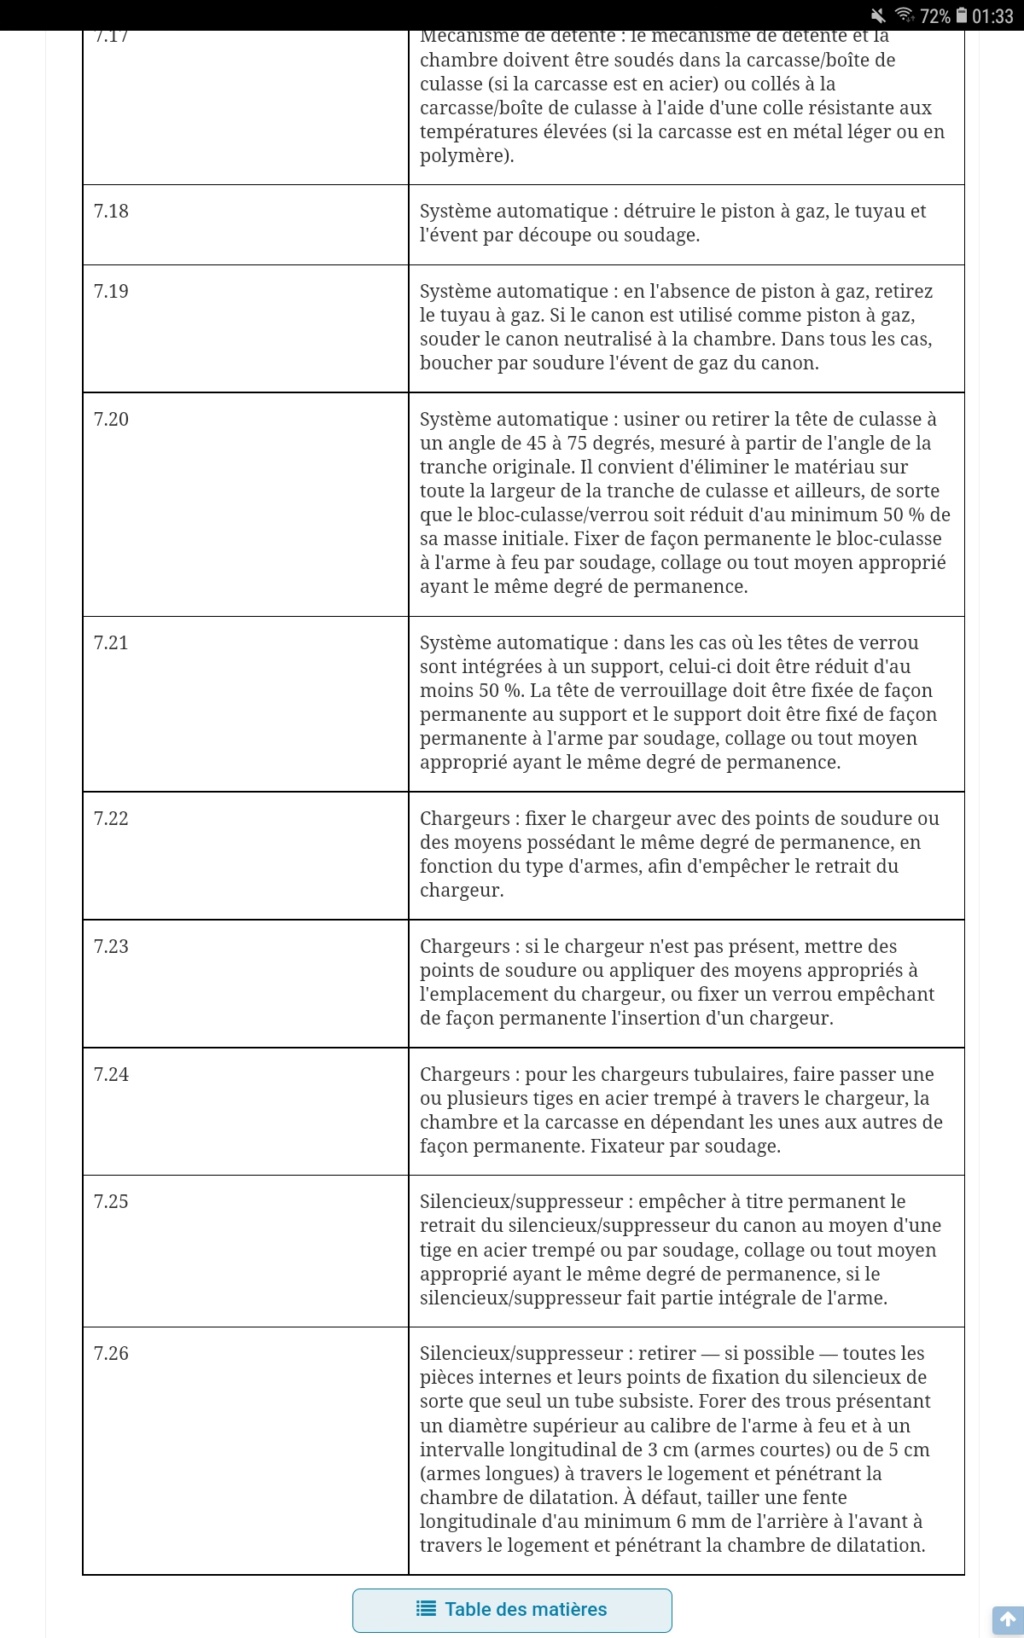 Estimation toutes pièces mg42 - Page 2 Screen18